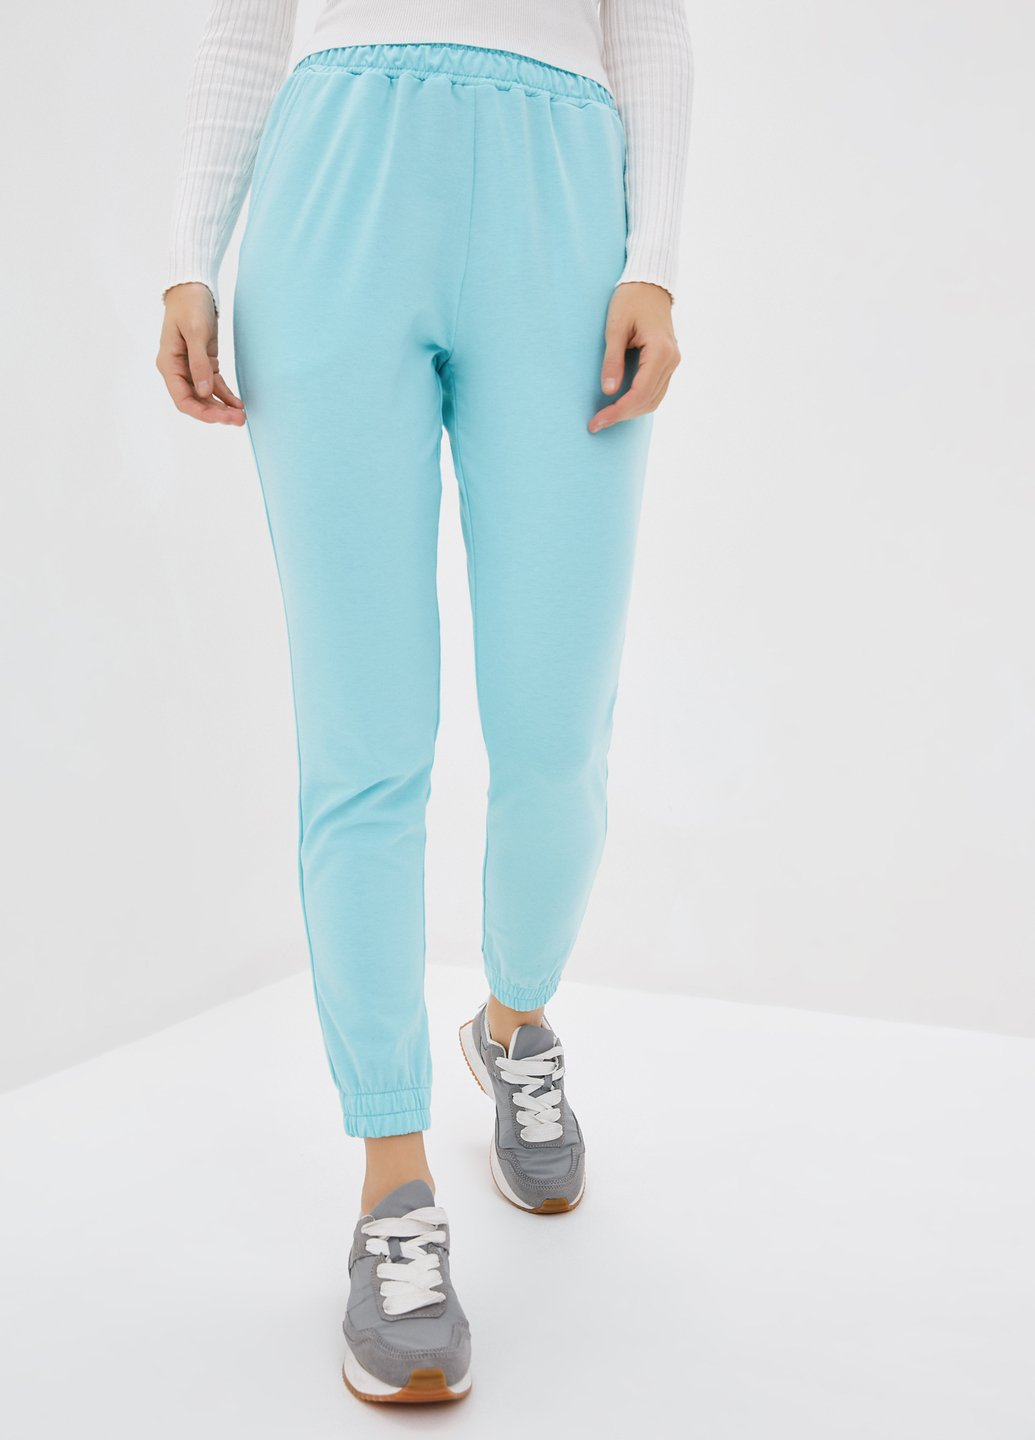 Купить Спортивные штаны женские Merlini Сити 600000058 - Голубой, 42-44 в интернет-магазине